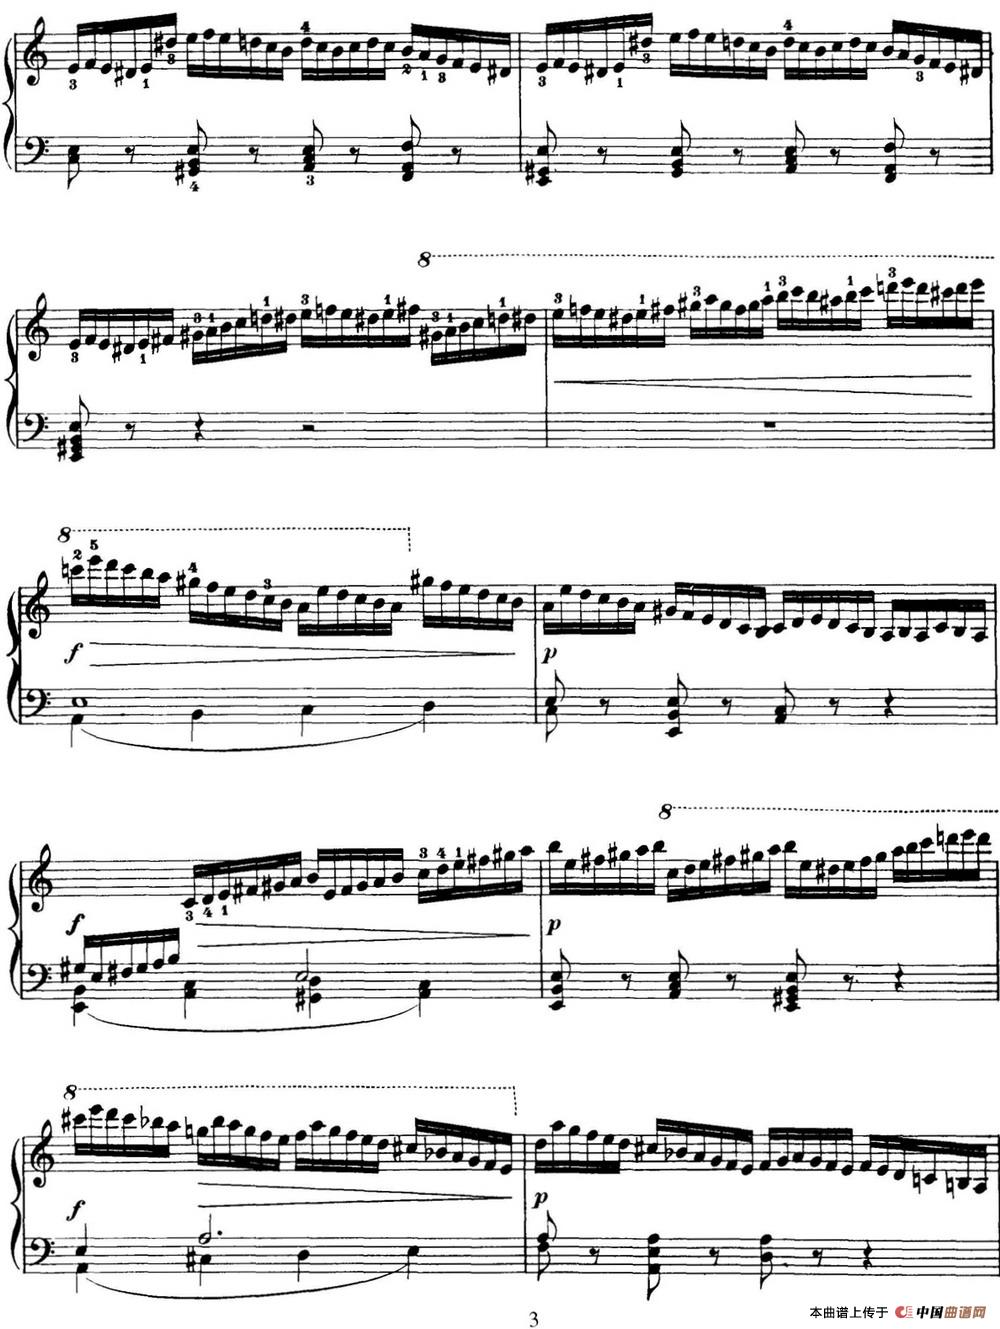 50首车尔尼Op.740钢琴手指灵巧技术练习曲（NO.17）(1)_C740_页面_062.jpg